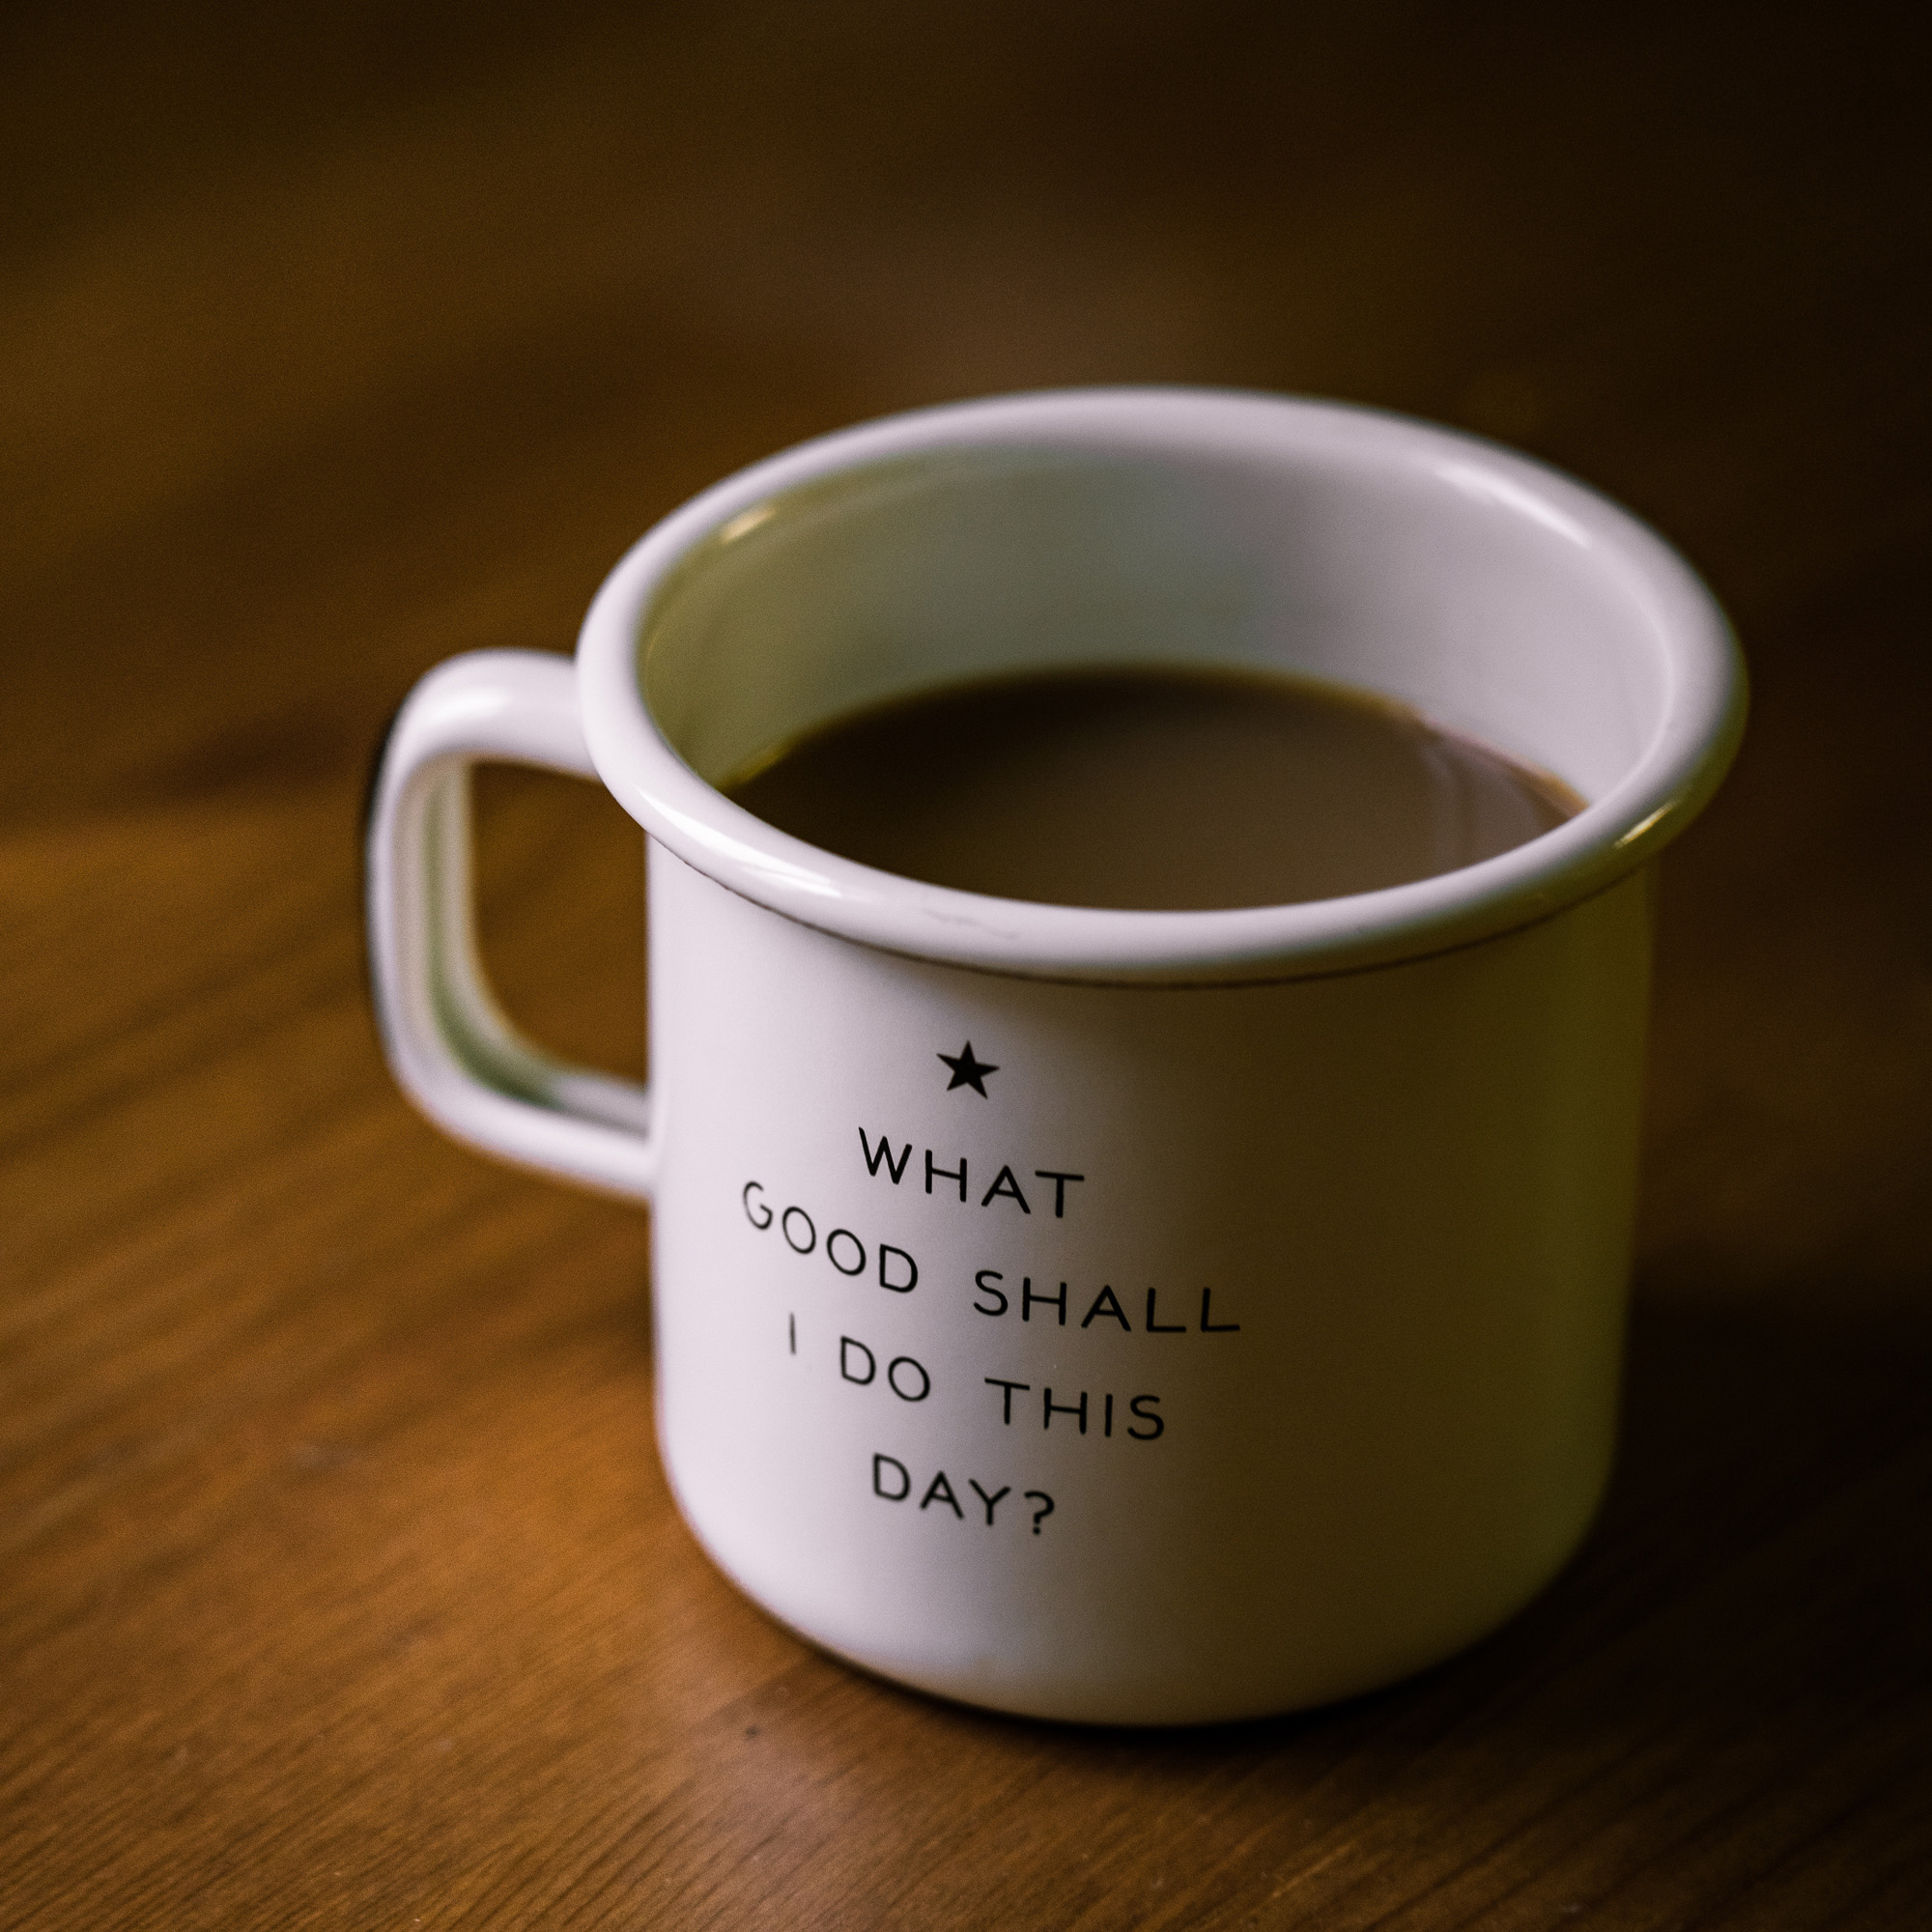 mug with writing on saying "what good shall I do this day?"